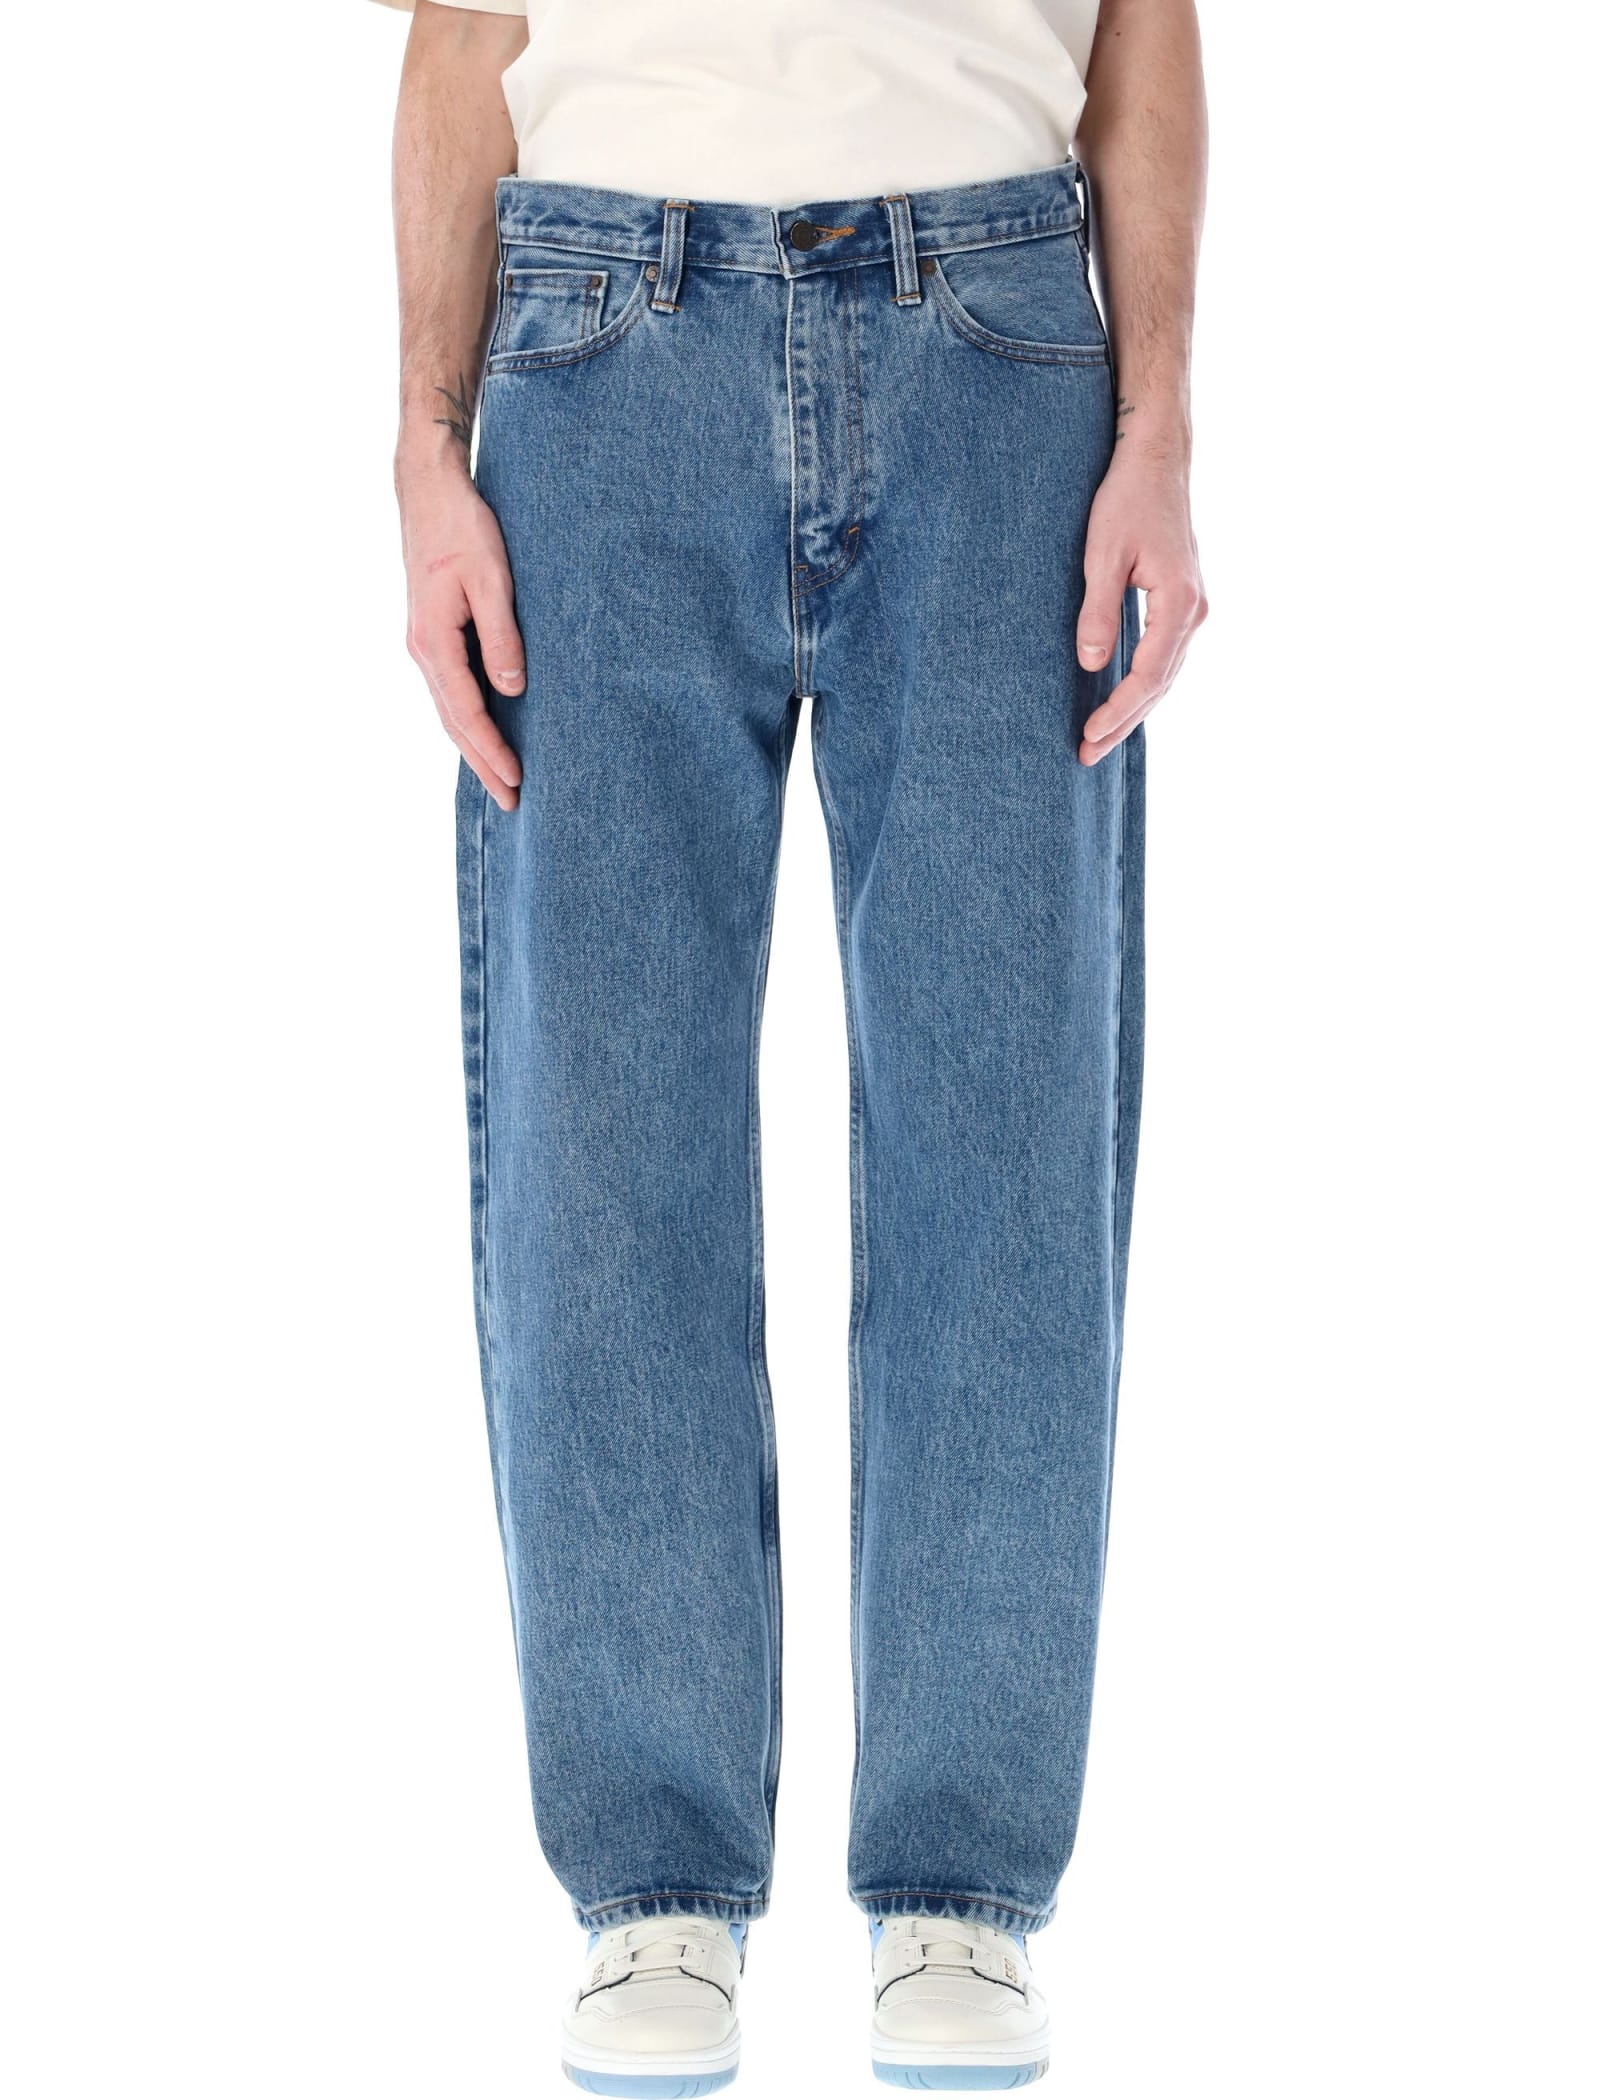 Cotton Baggy Five Pocket Jeans